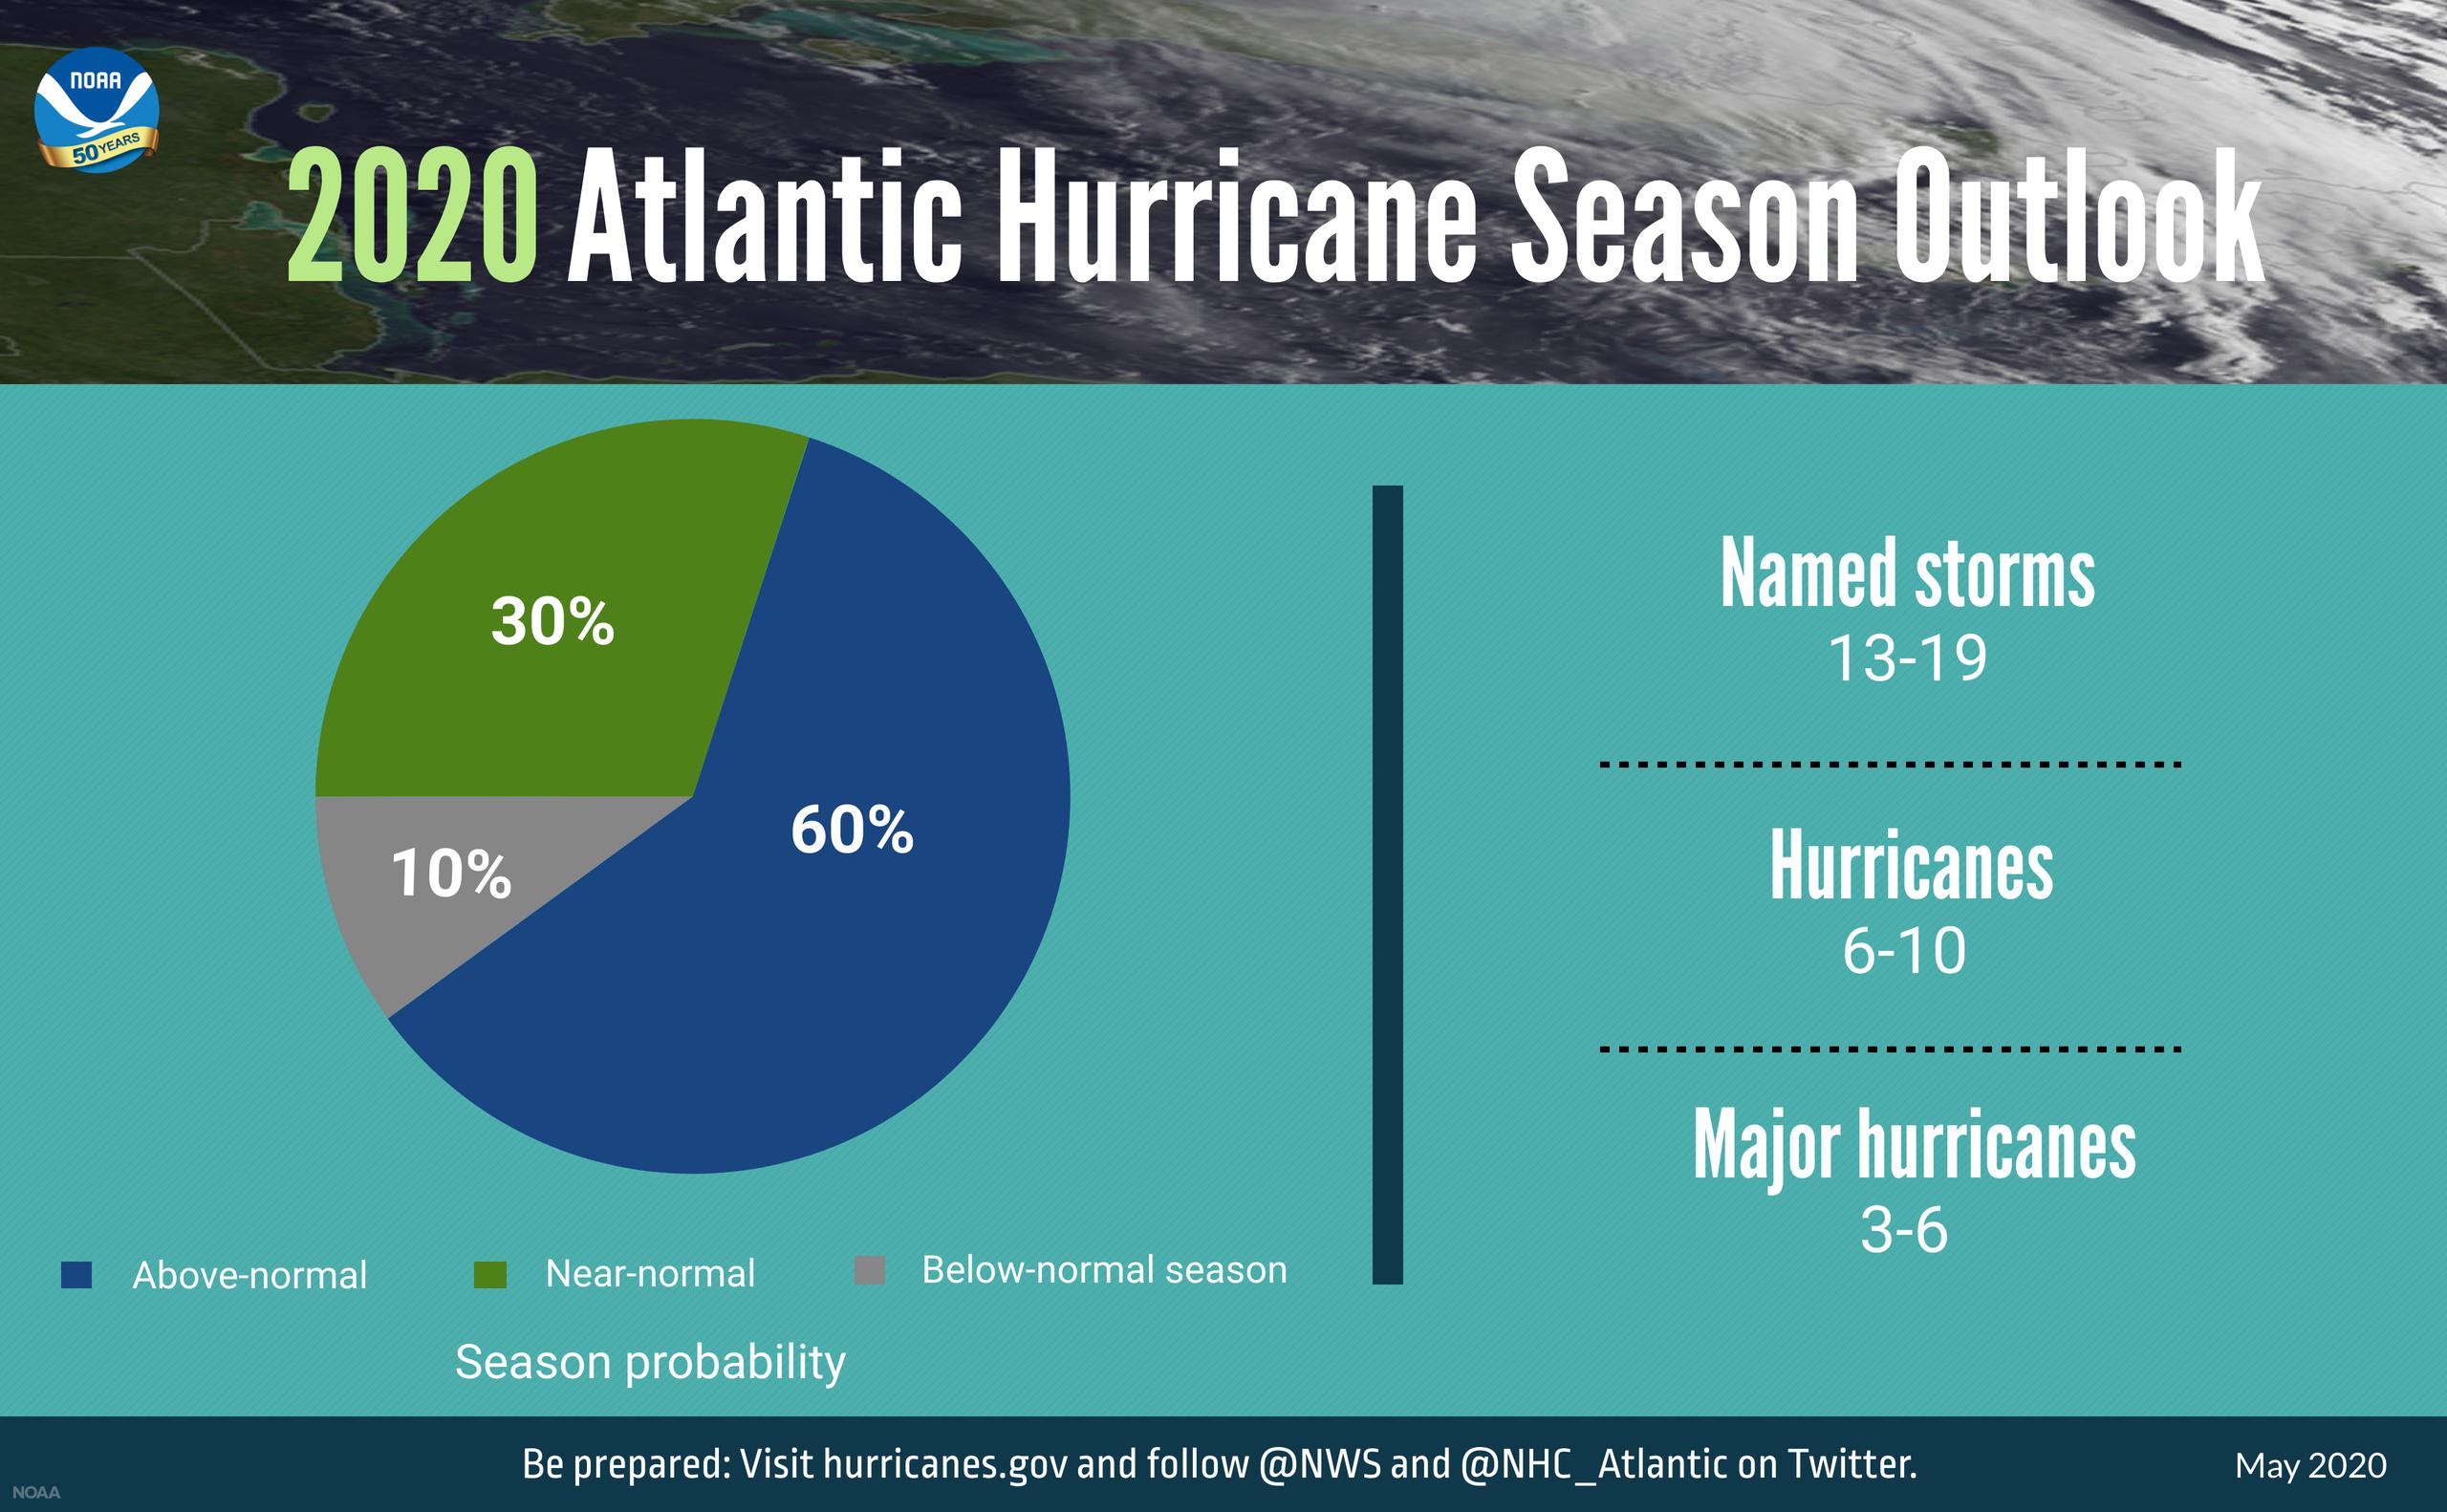 Pronóstico de la Administración Nacional Oceánica y Atmosférica sobre la temporada de huracanes en el Atlántico este año.